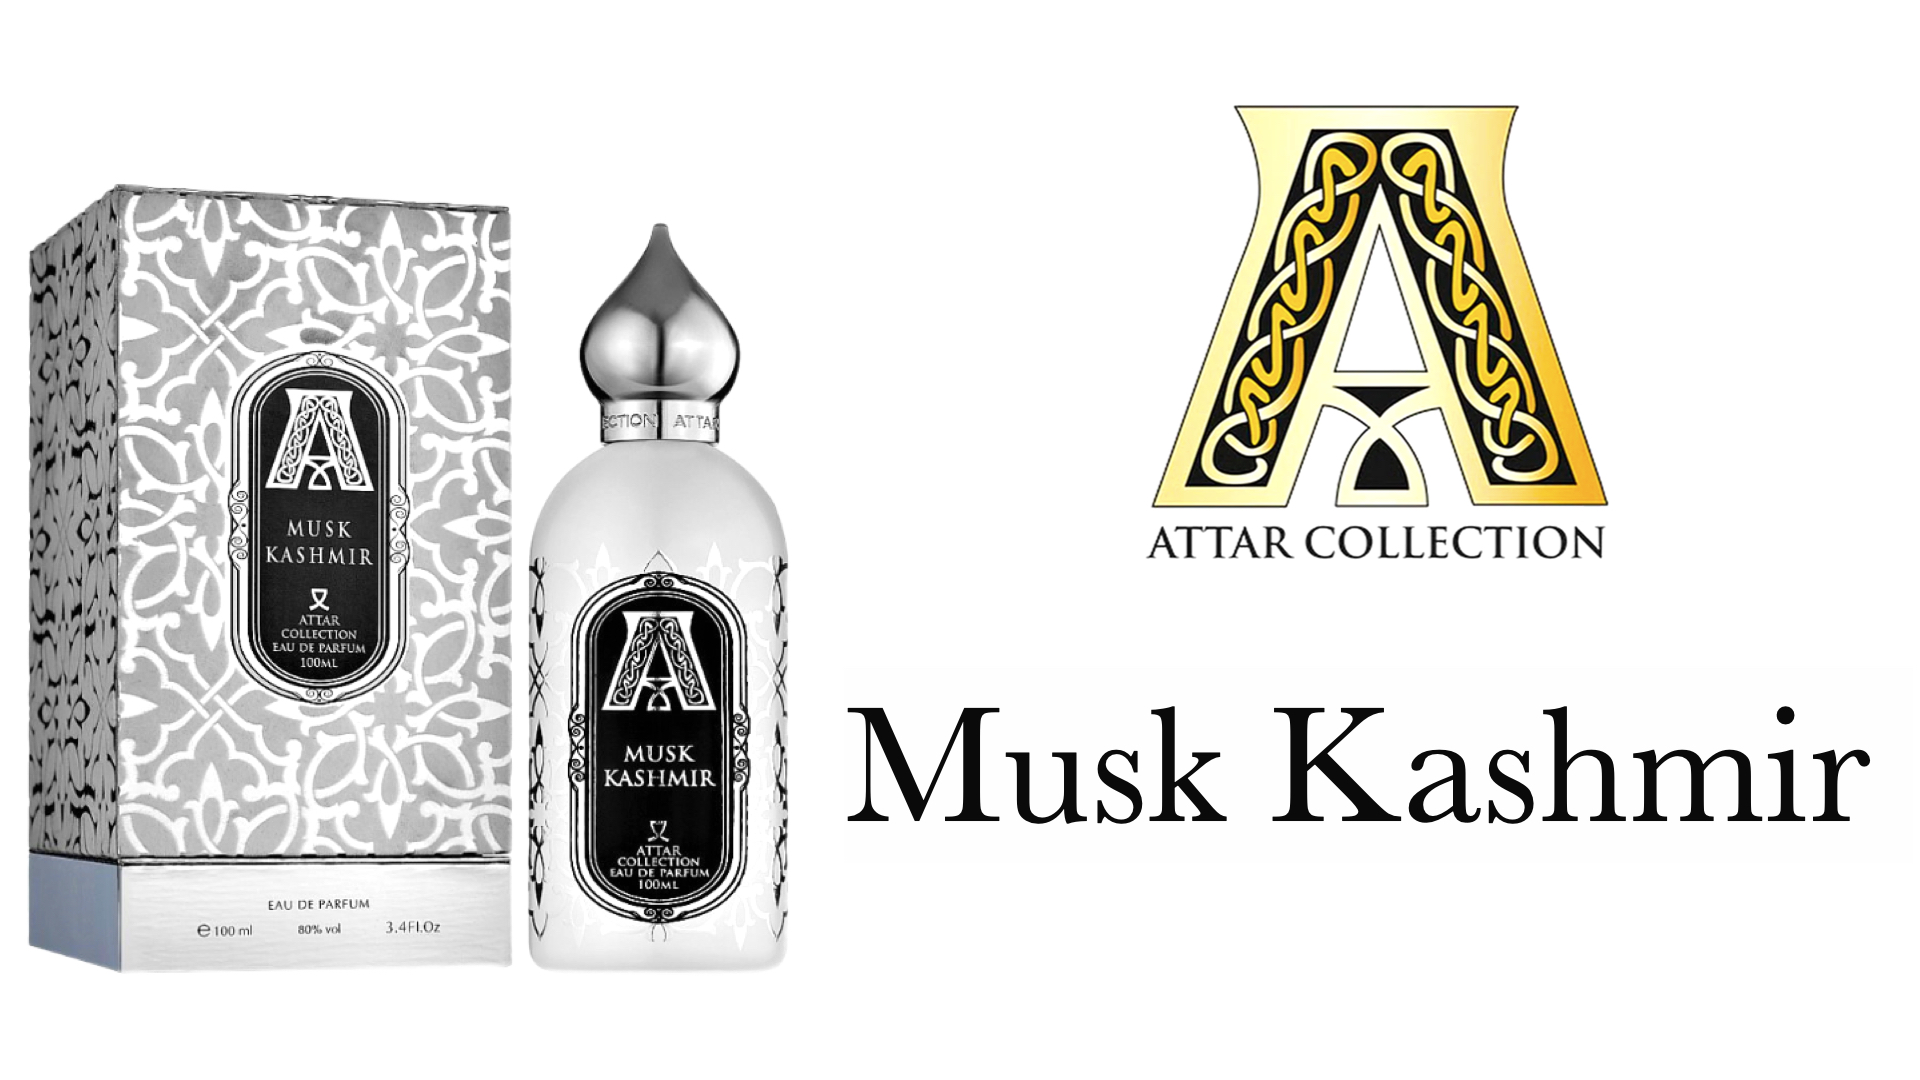 Attar musk kashmir отзывы. Аромат Musk Kashmir. Attar collection Musk Kashmir. Attar Musk Kashmir. Musk Kashmir аромат какой.